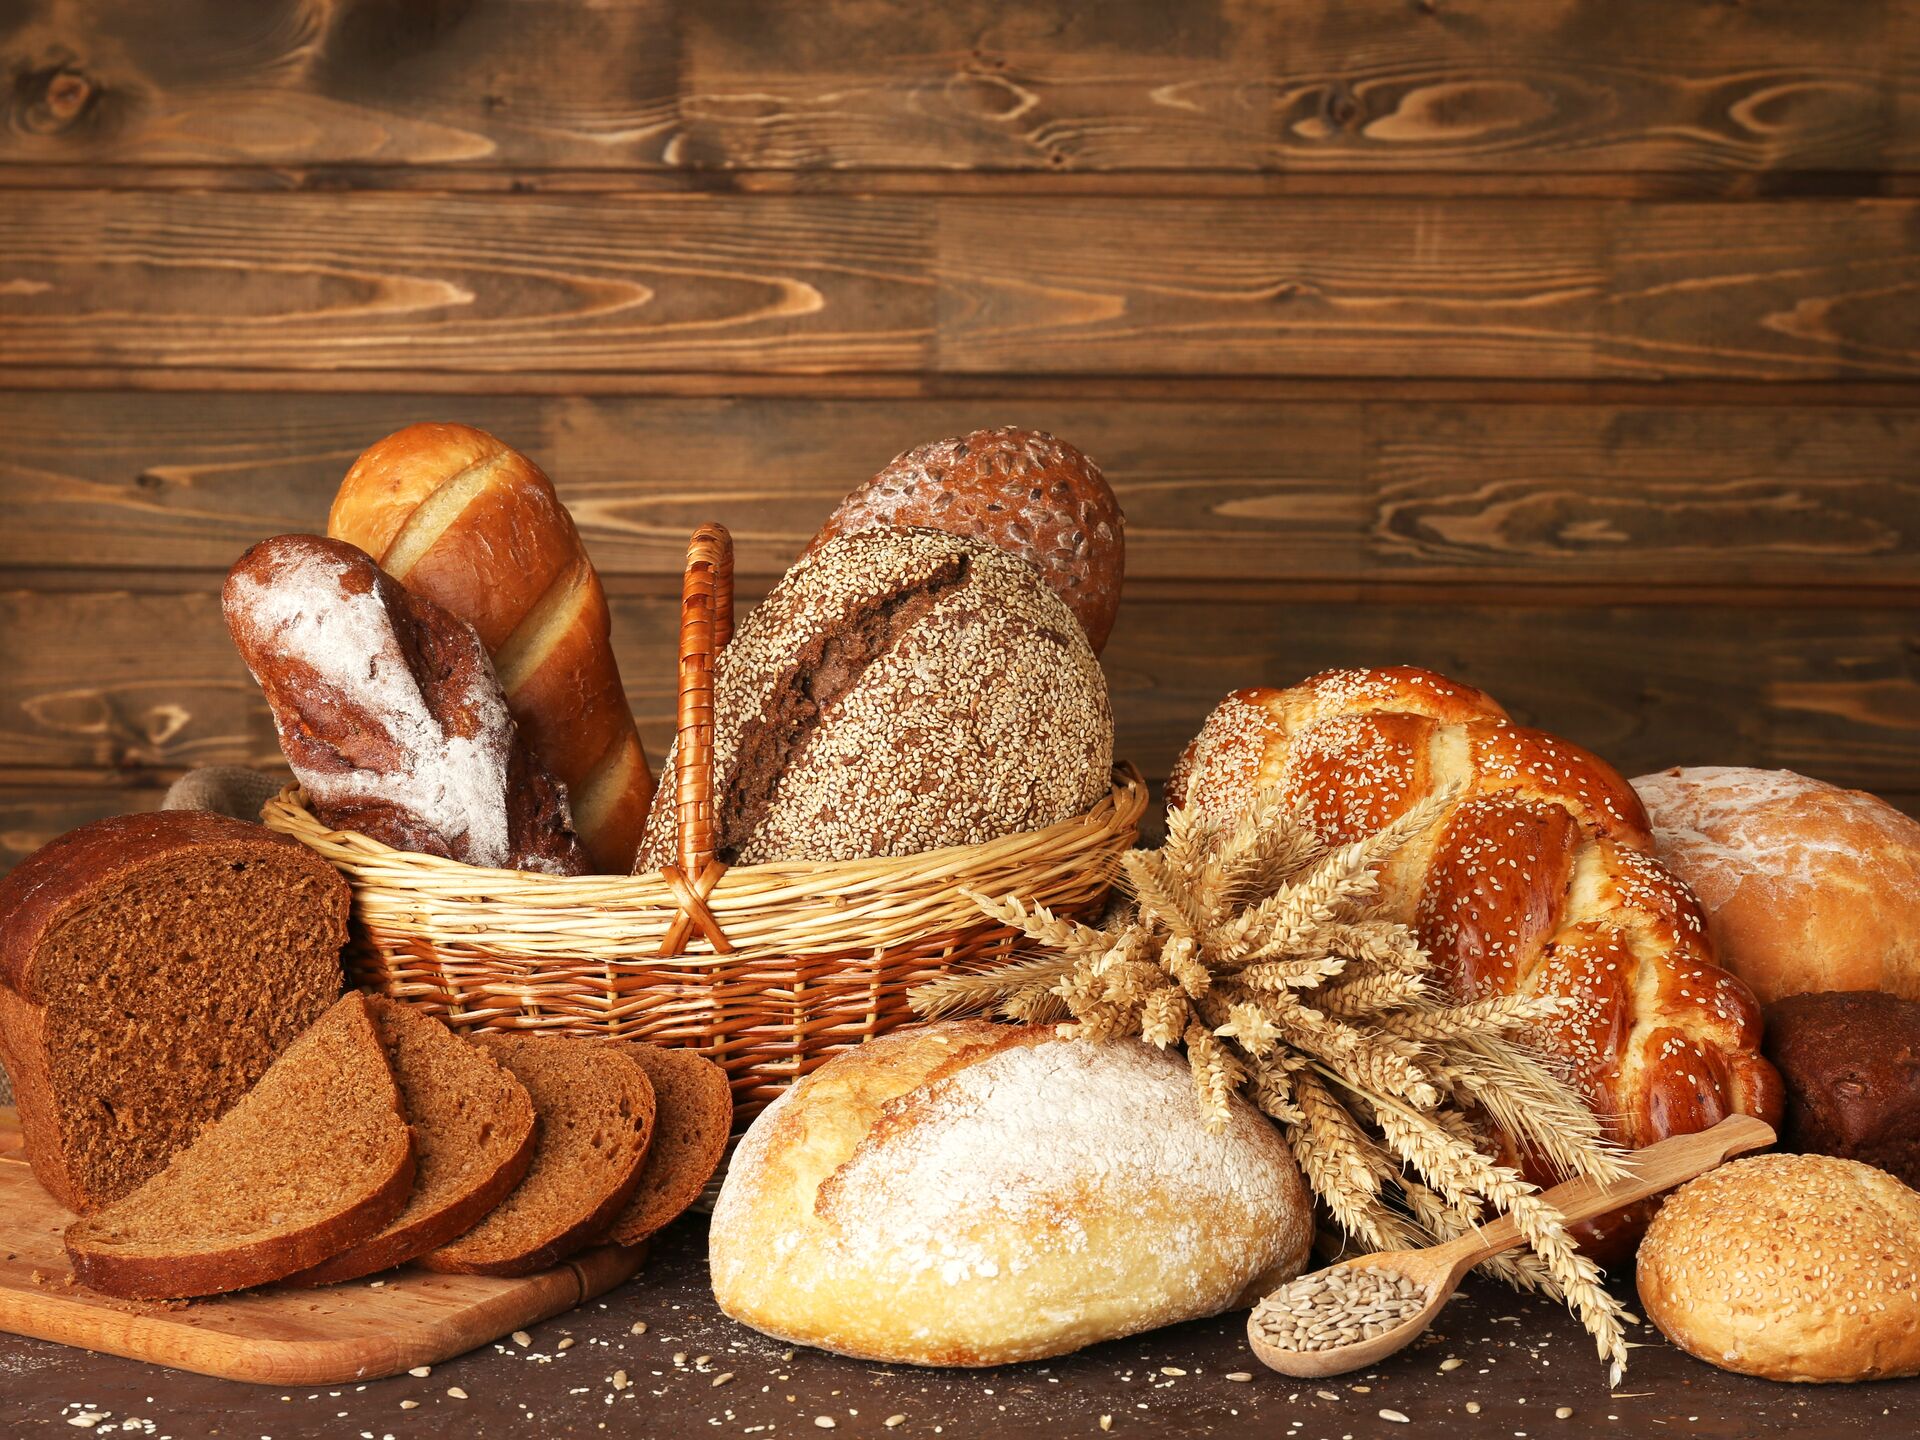 Сколько ржаной муки требуется для выпечки 28 тонн хлеба?